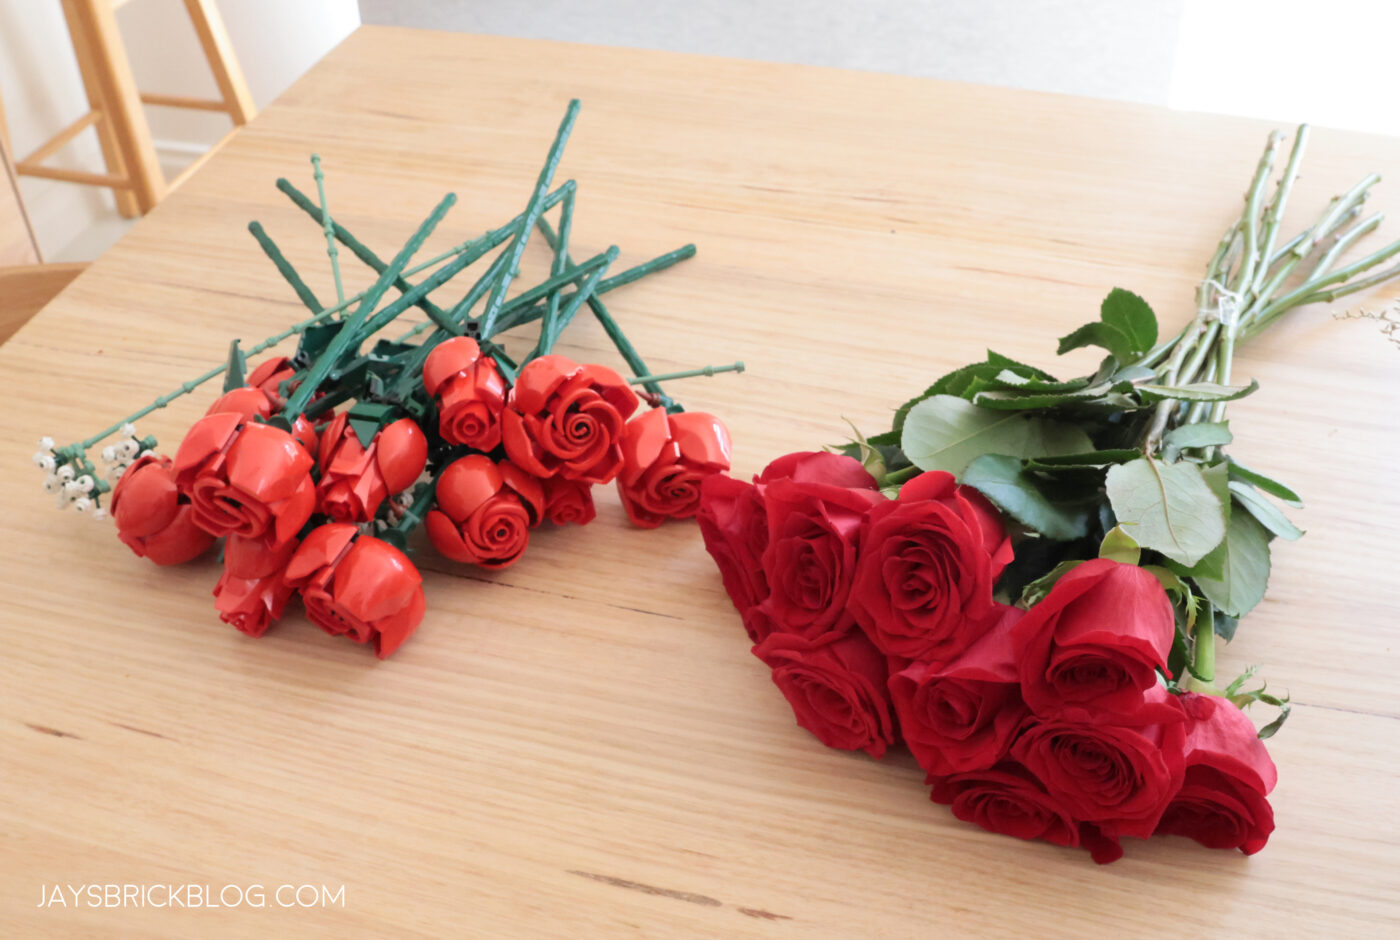 Bouquet de rose LEGO 10328 –